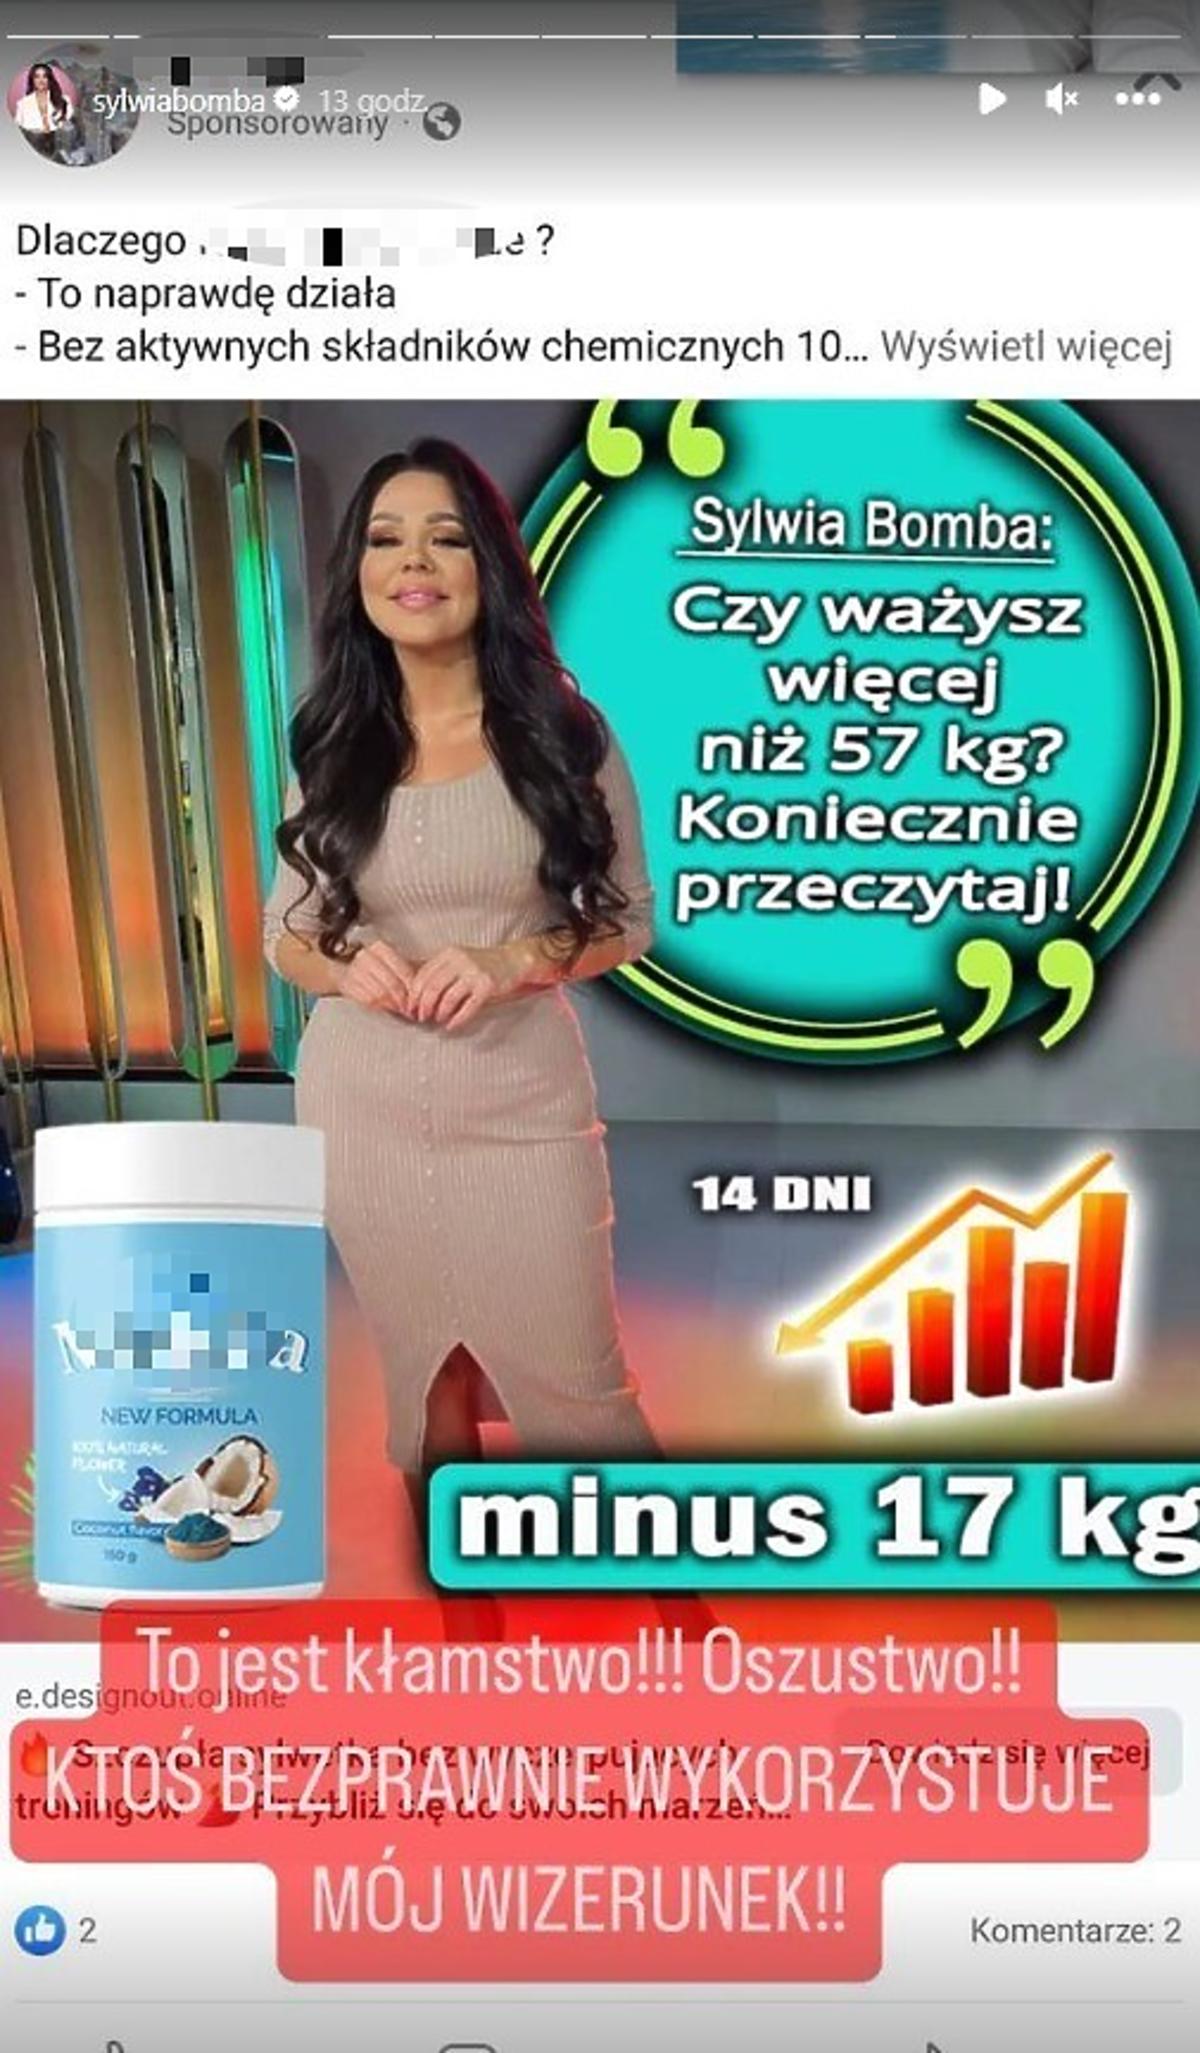 Sylwia Bomba wykorzystana do reklamy produktu